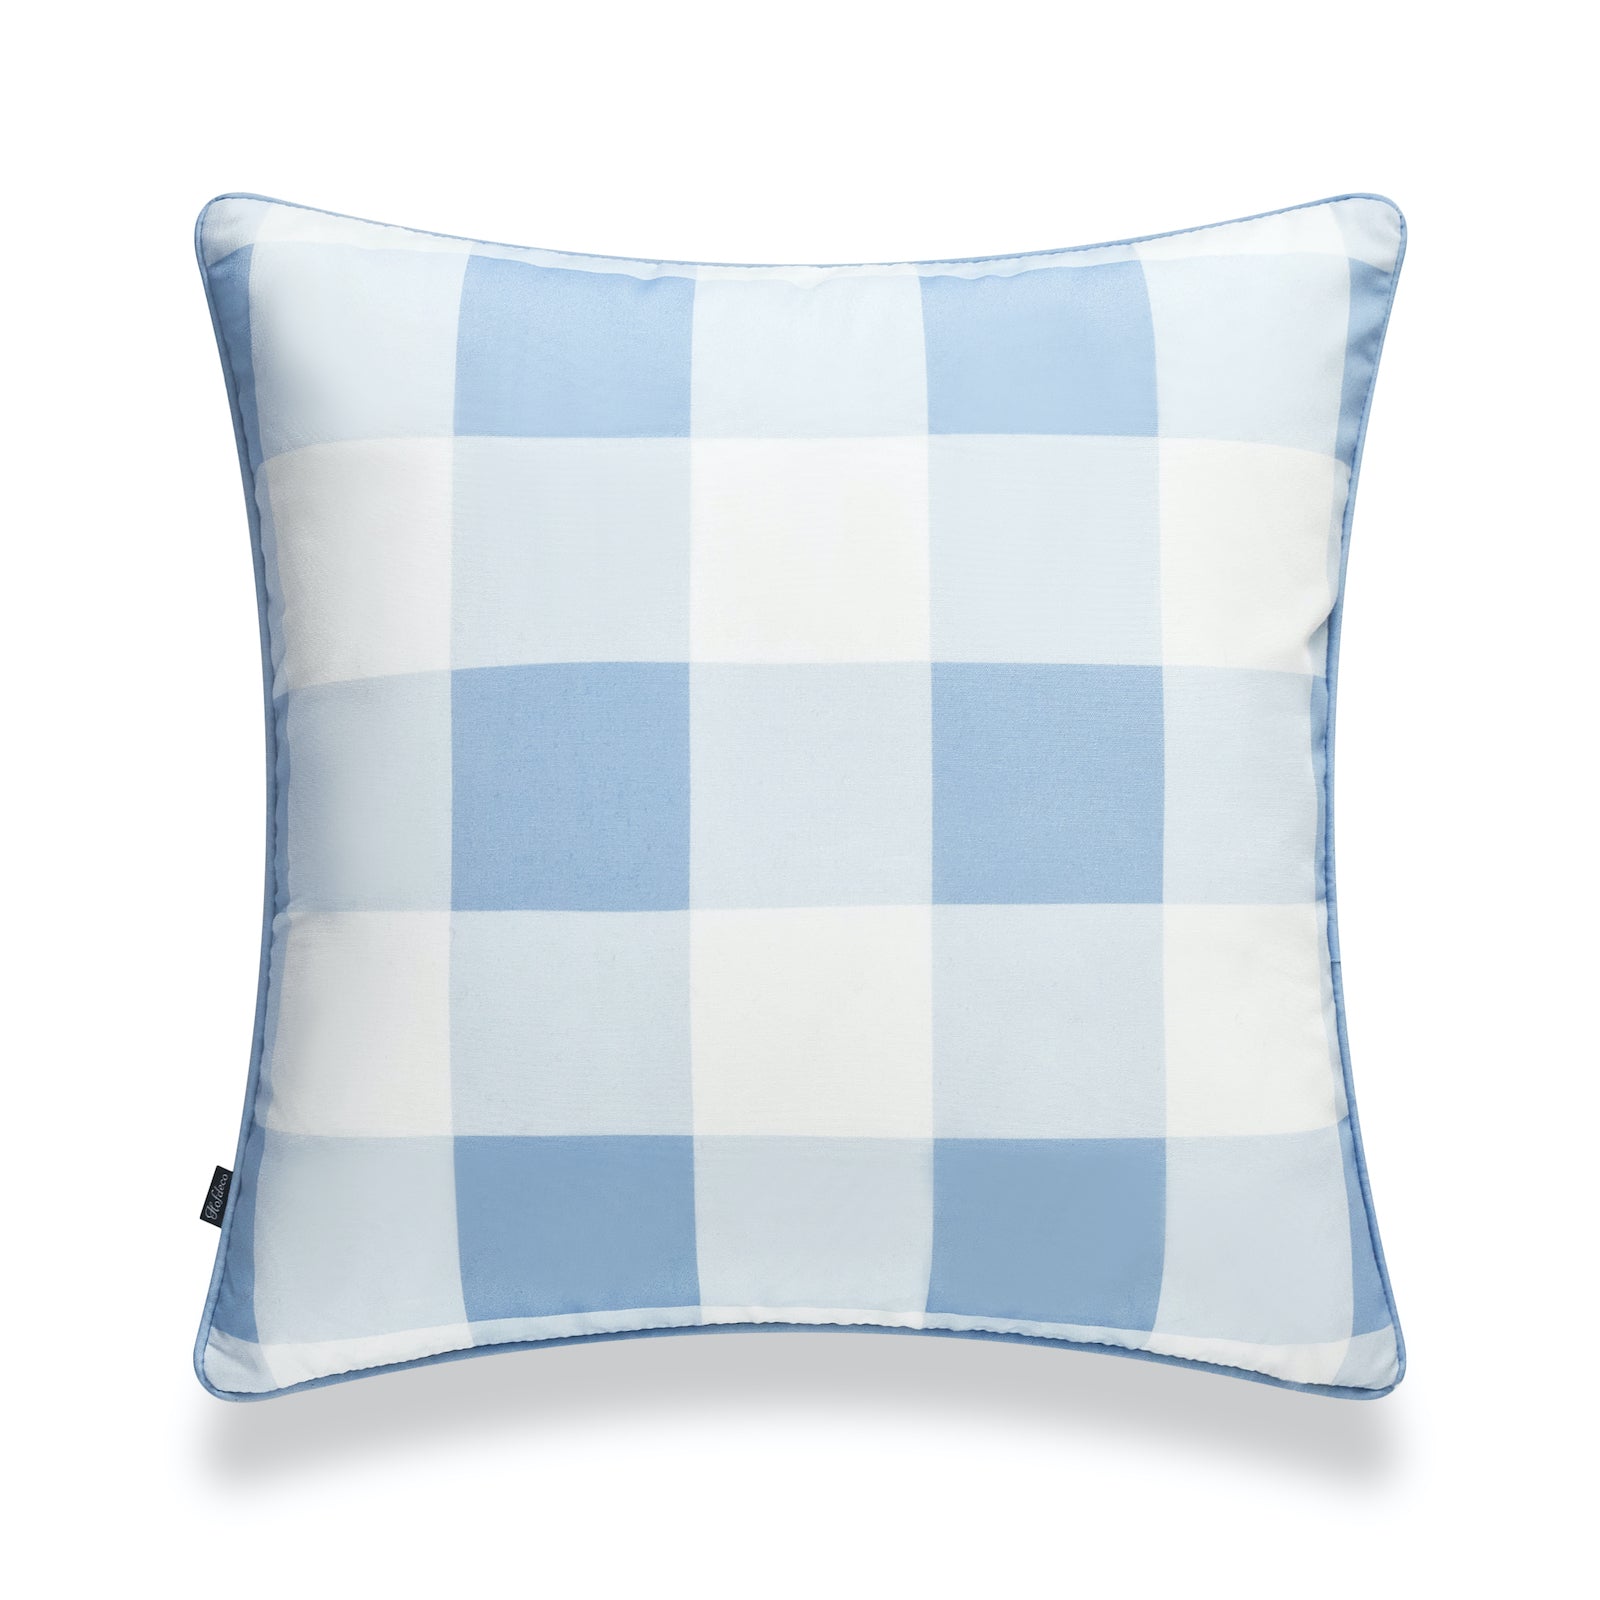 Coastal Indoor Outdoor Pillow Cover, Buffalo Check, Baby Blue, 20"x20"